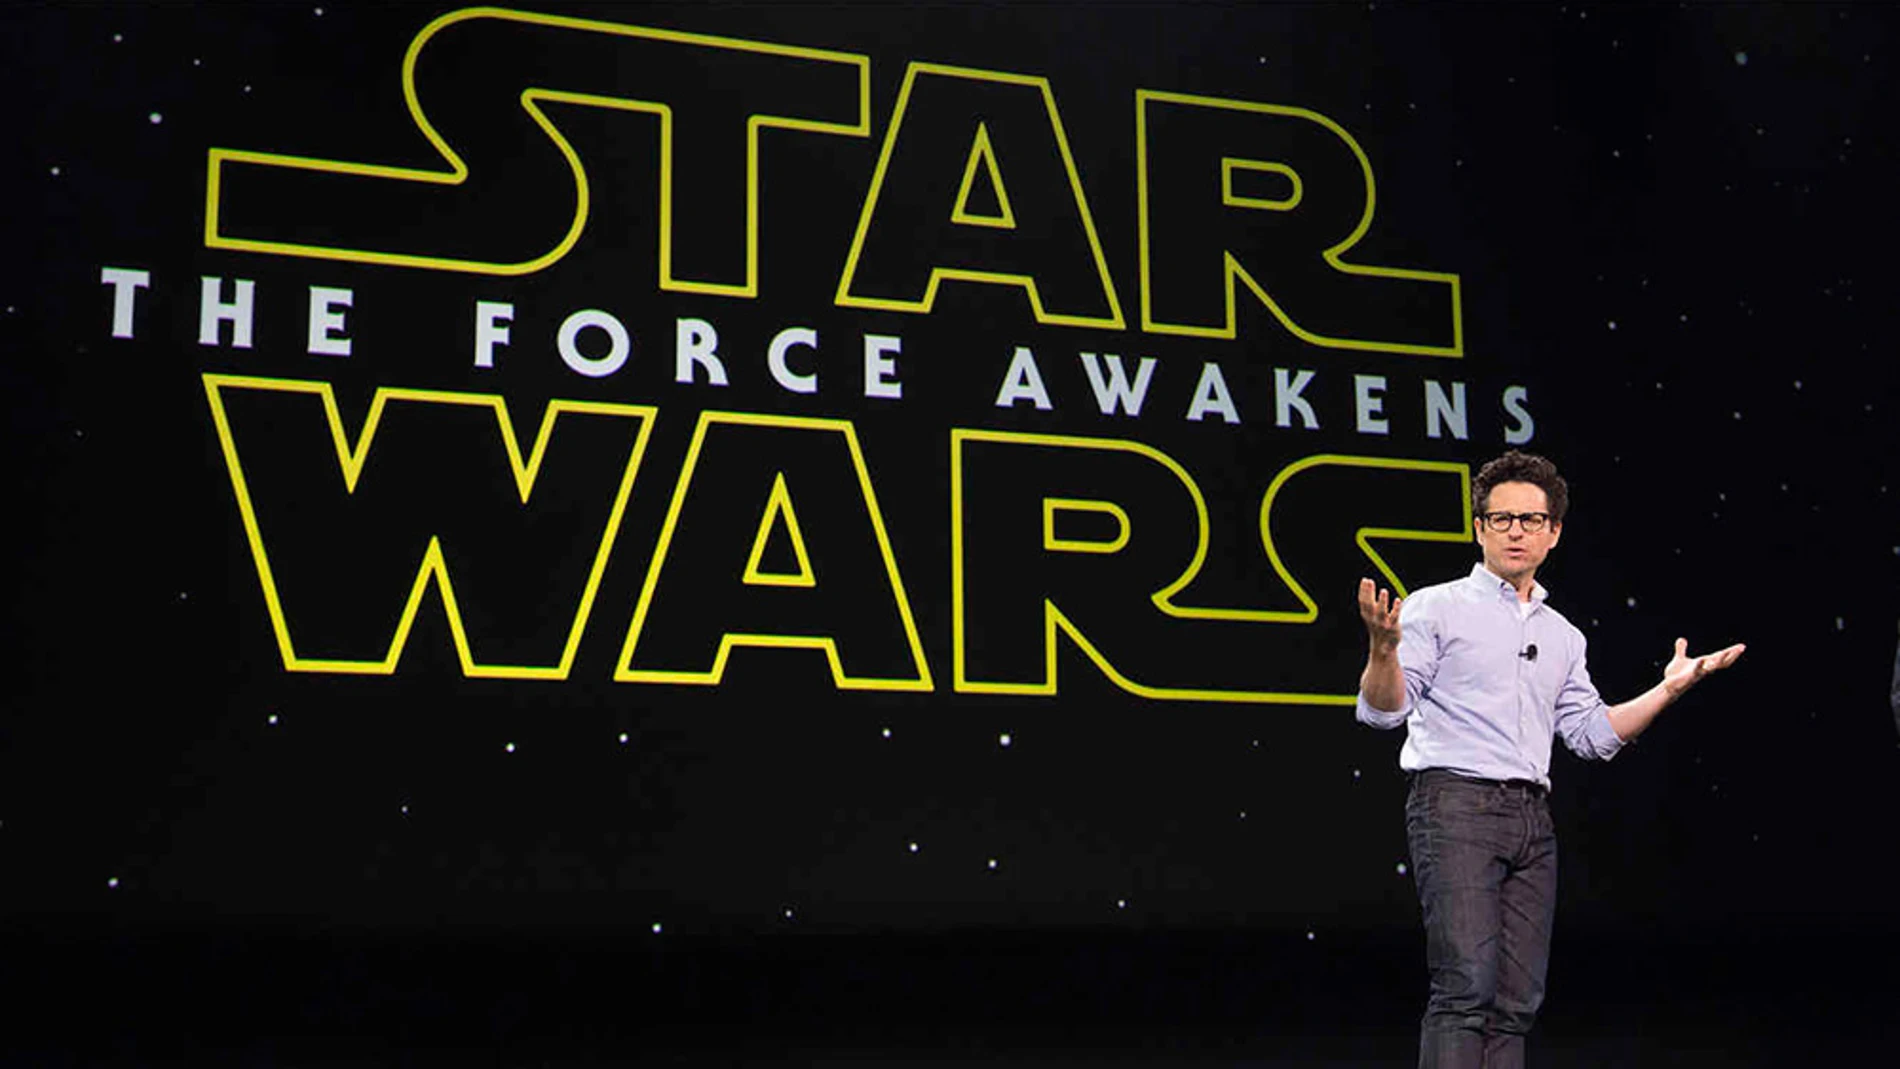 J.J. Abrams, director del próximo Star Wars, anuncia su primer videojuego